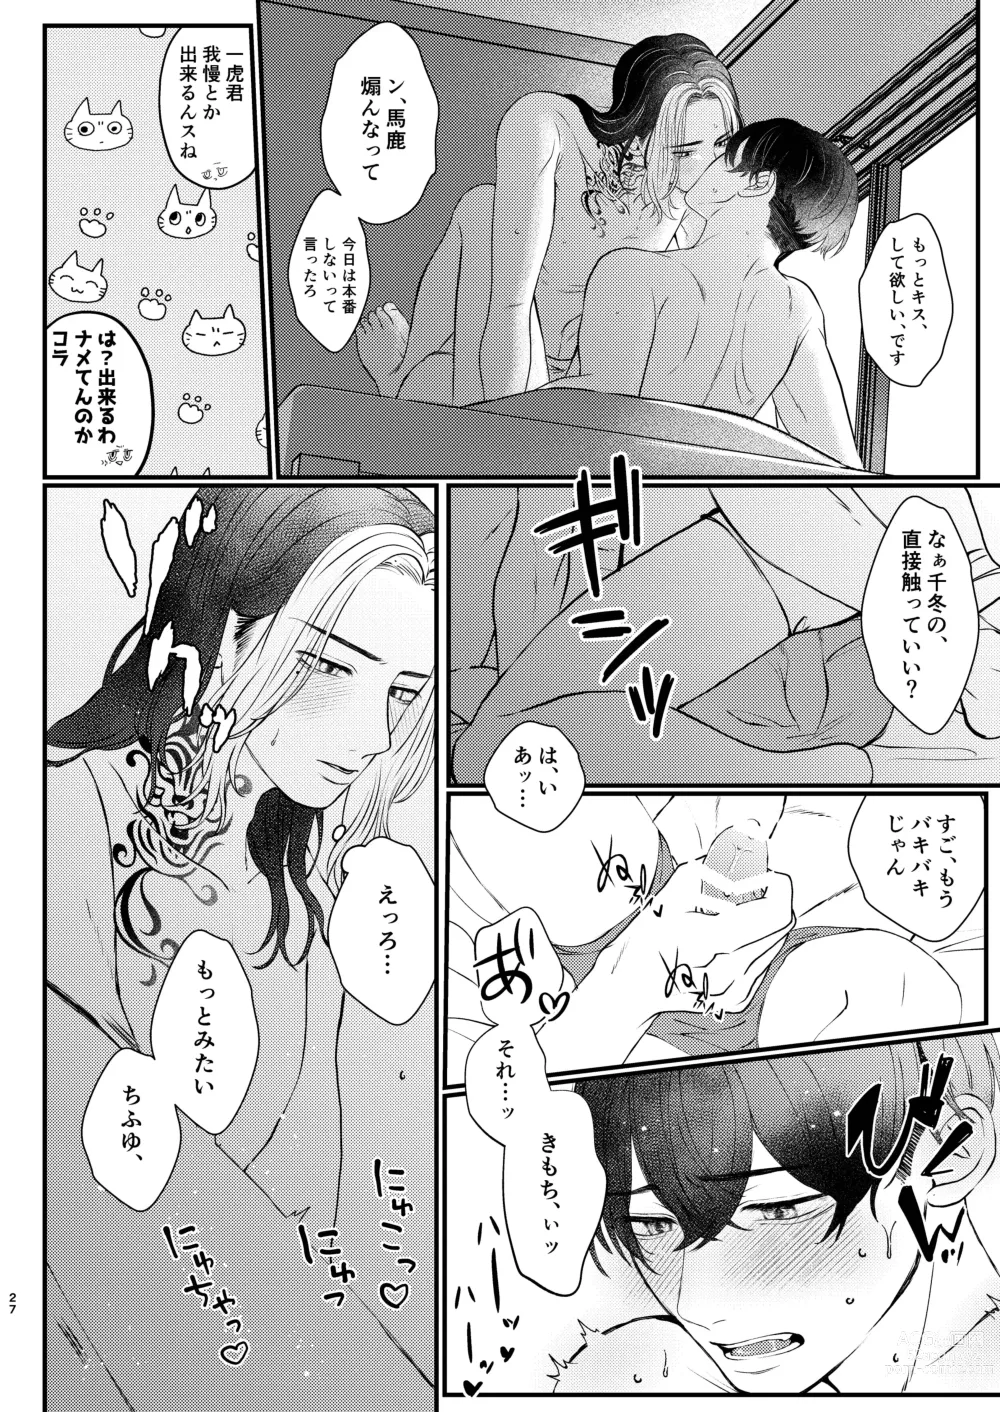 Page 26 of doujinshi Cowardice